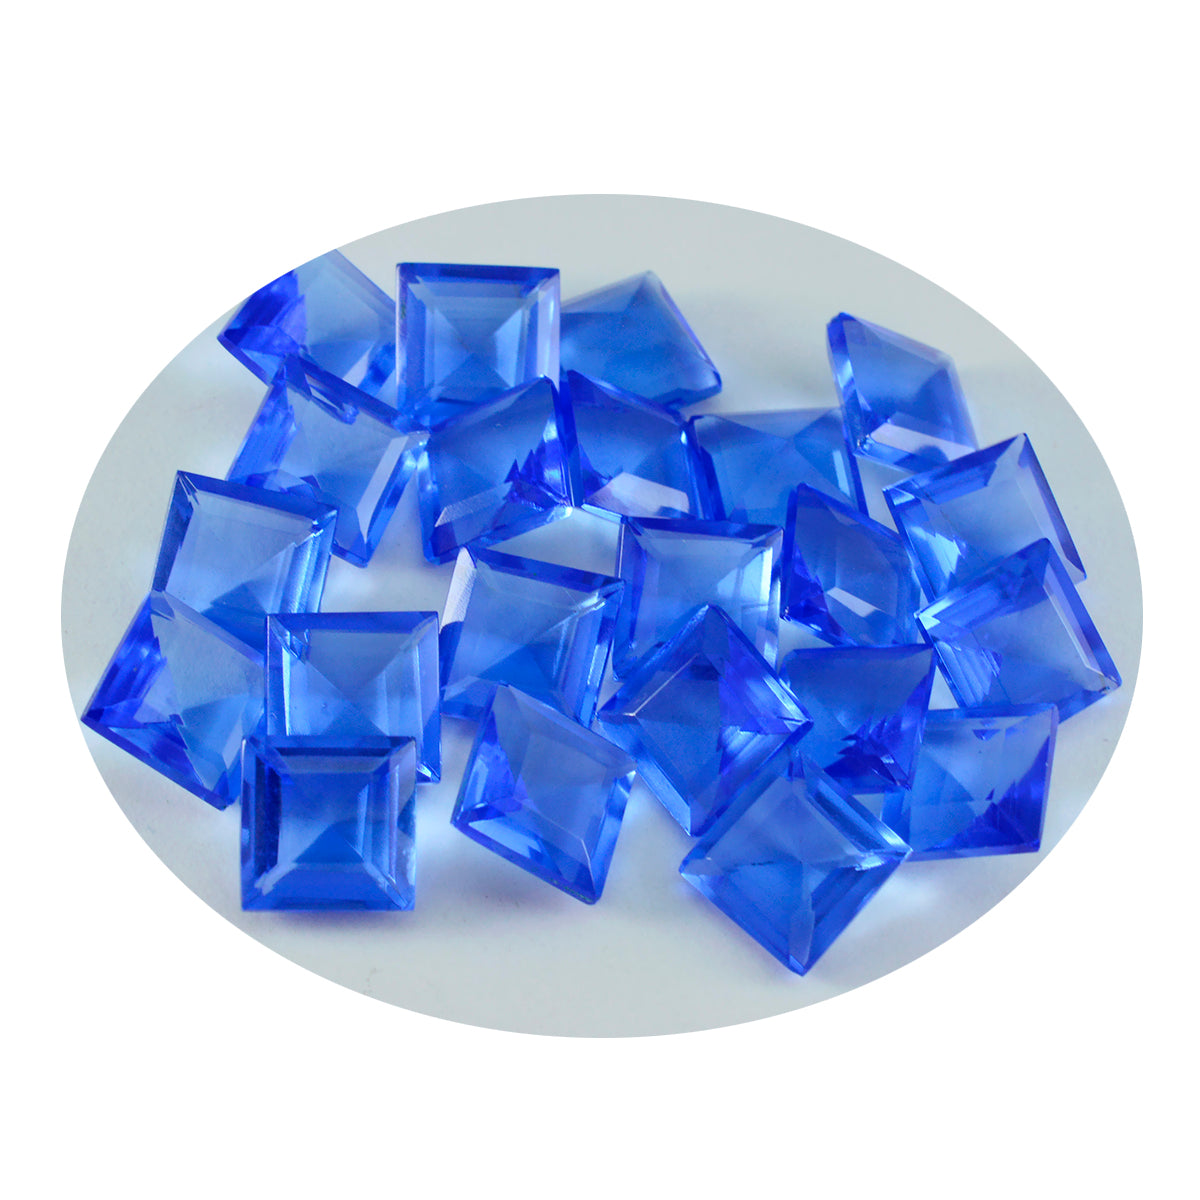 Riyogems 1PC Blauwe Saffier CZ Facet 10x10 mm Vierkante Vorm knappe Kwaliteit Losse Edelsteen